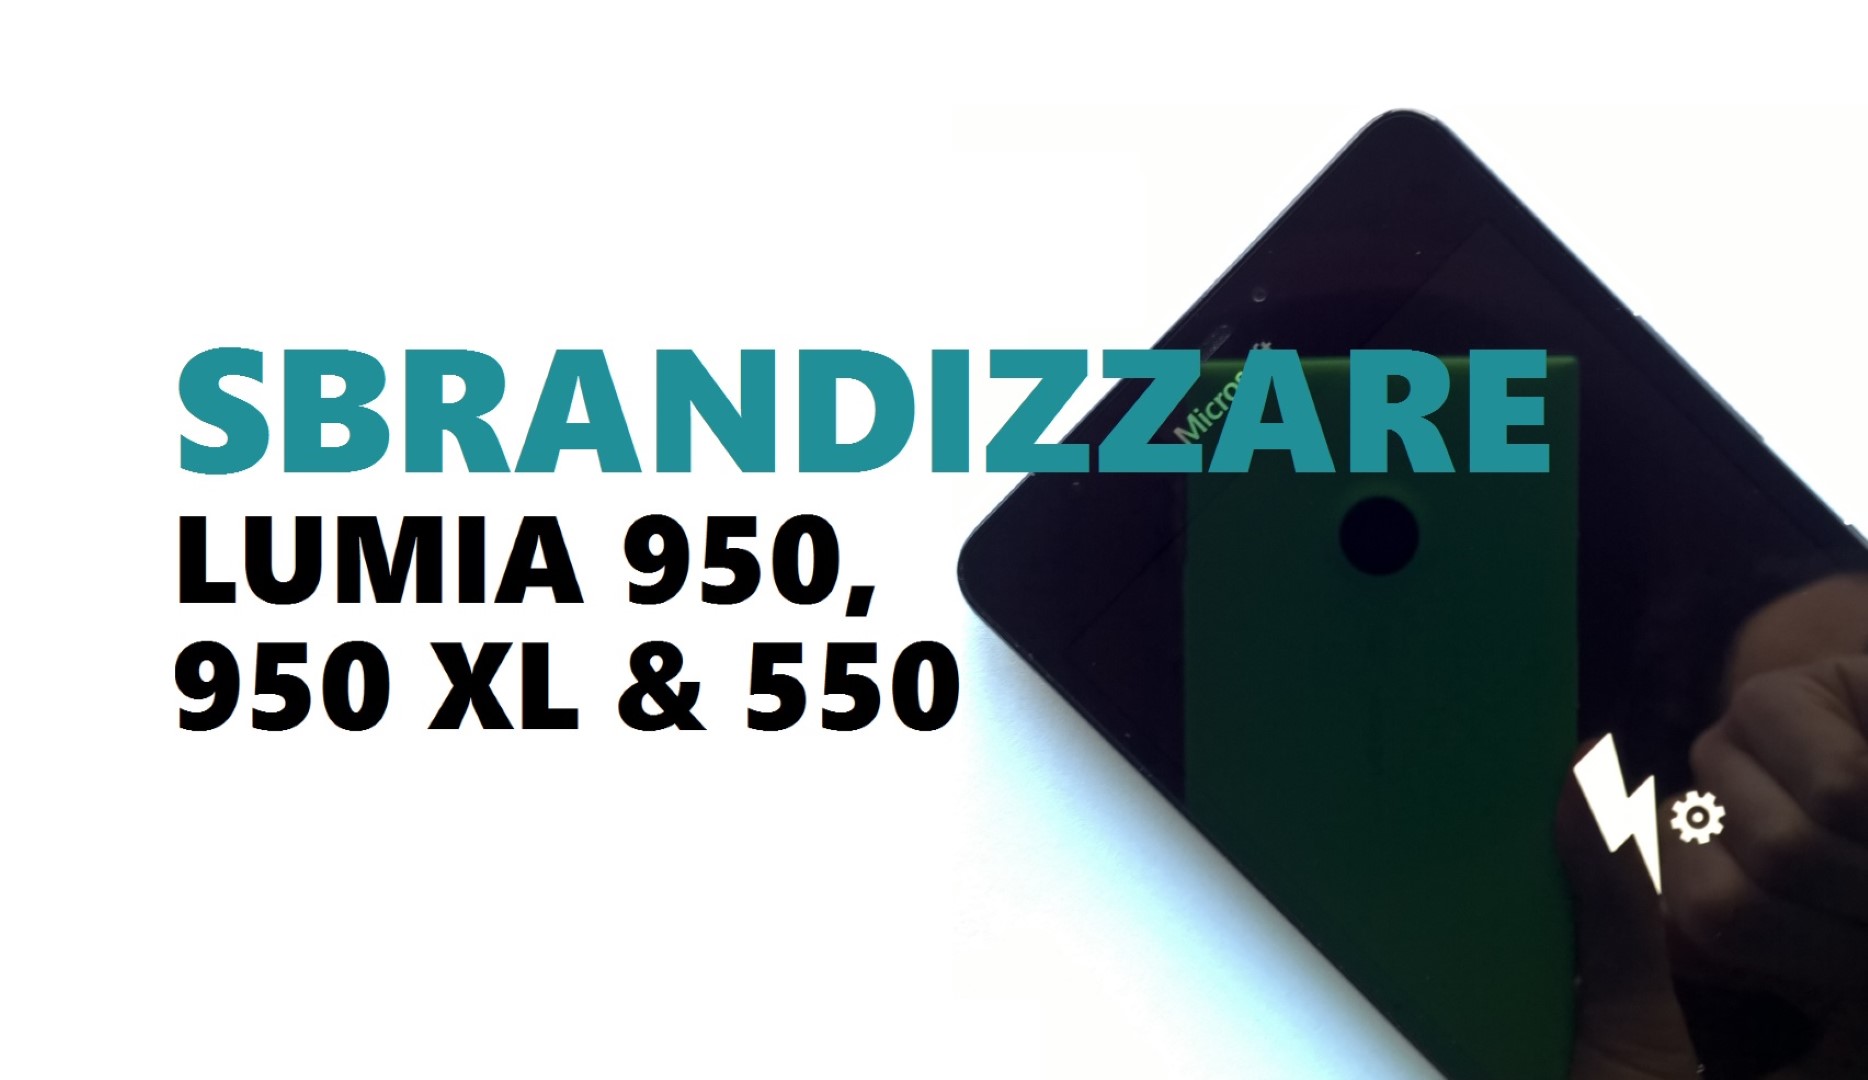 lumia-950-xl-sbrandizzare (Large)